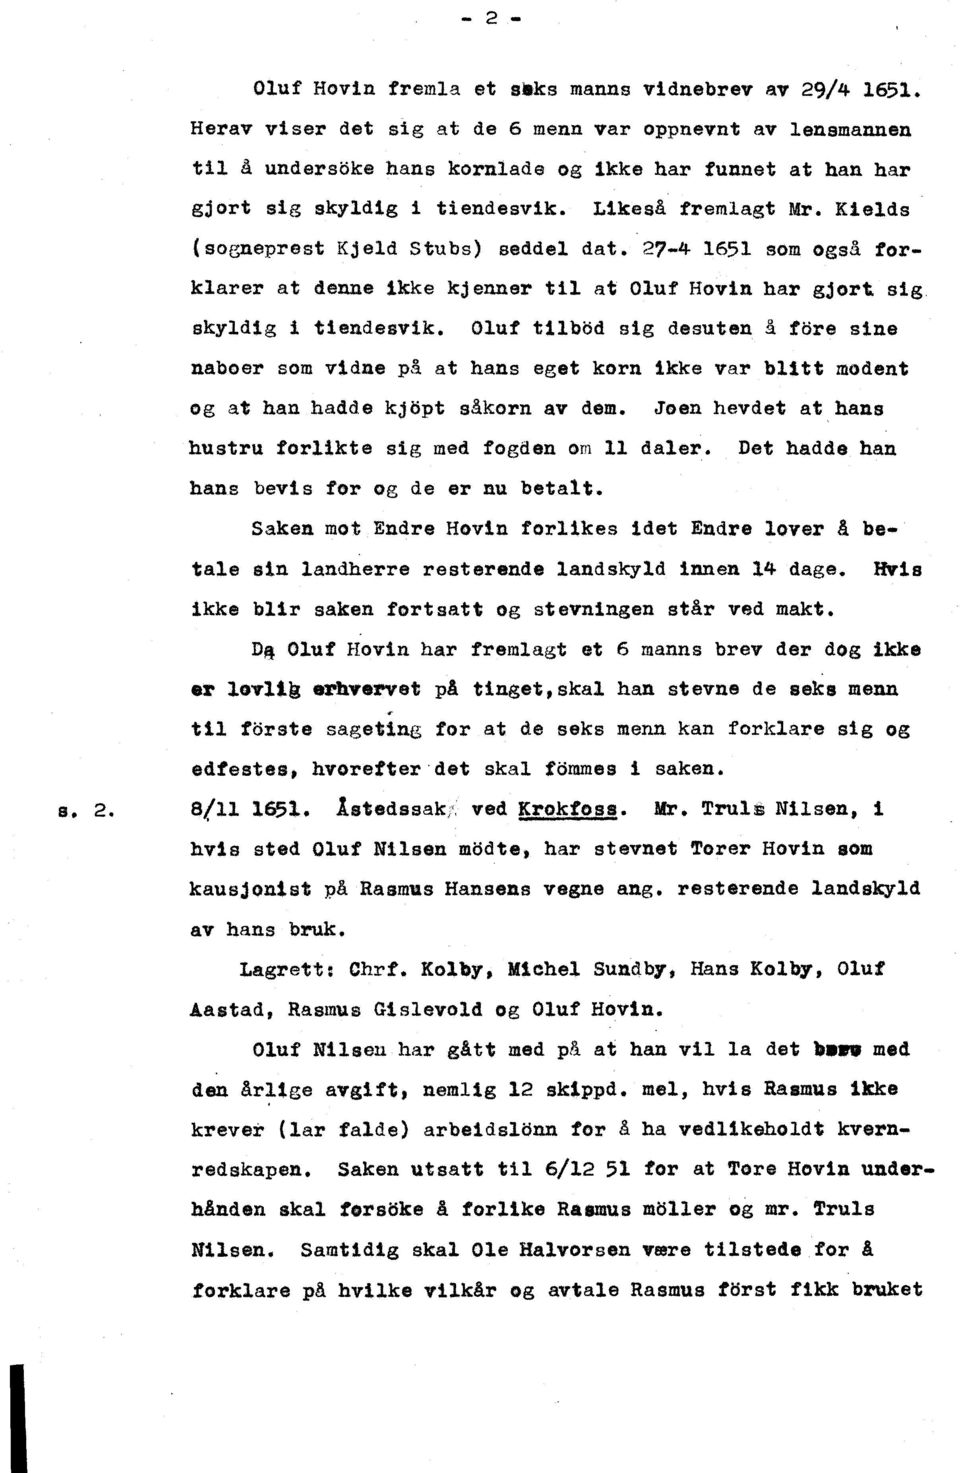 Klelds (sogneprest Kjeld stubs) seddel dat. 27-4 1651 som også torklarer at denne ikke kjenner til at Oluf Hovin har gjort sig skyldig i tiendesvik.